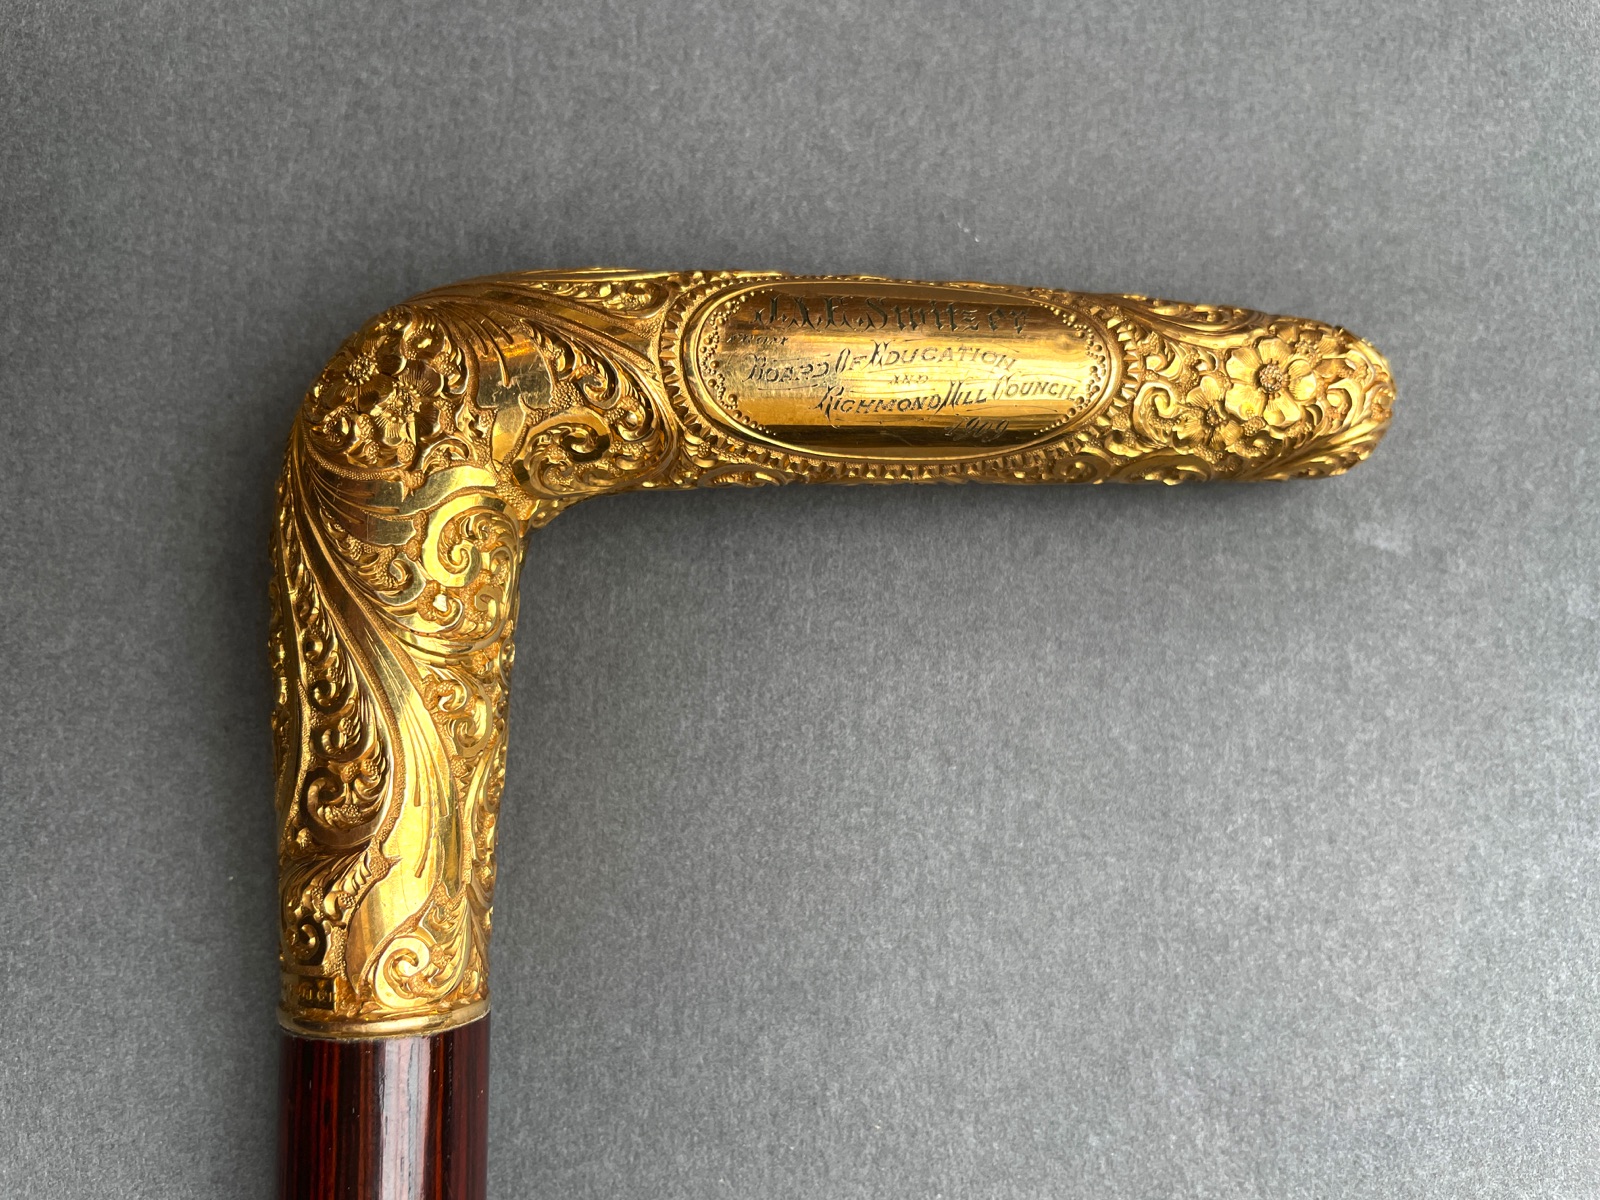 10K Gold Walking Stick / Cane with Decorative Repoussé Handle